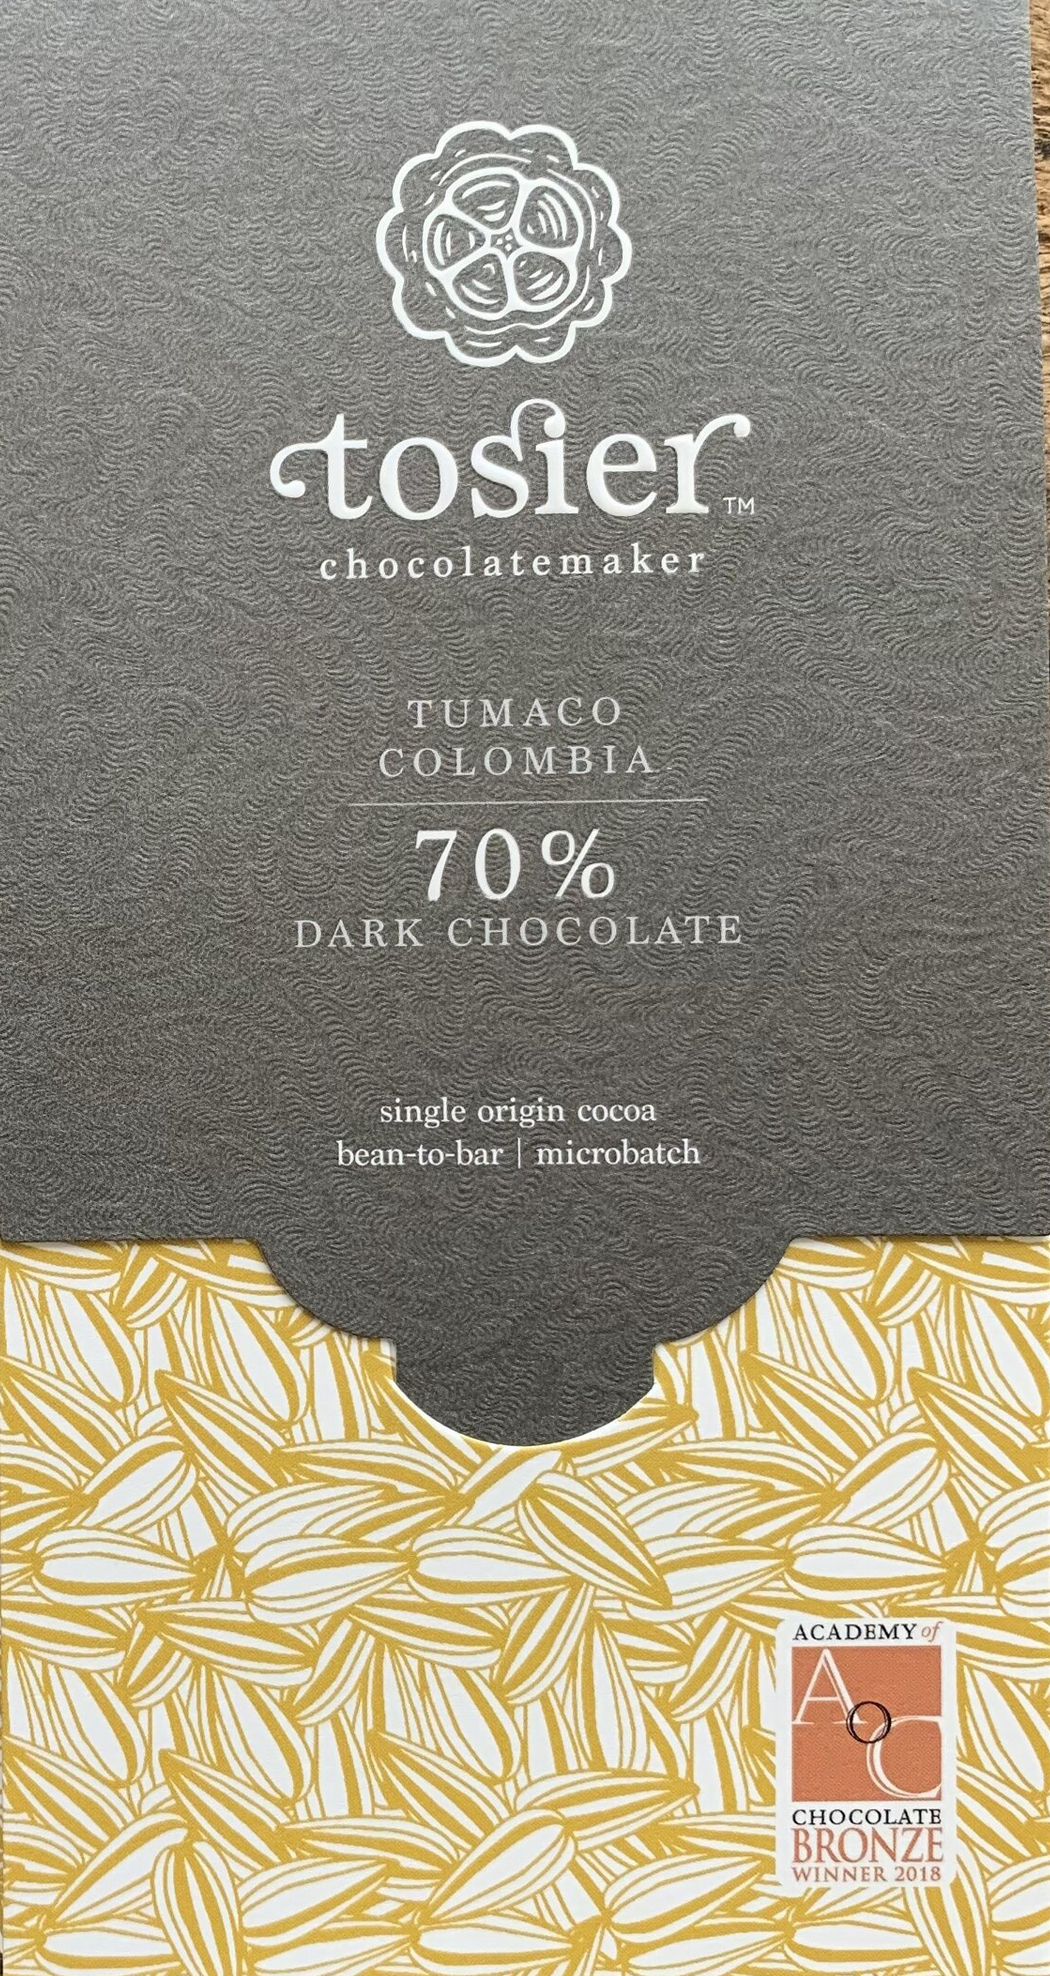 TOSIER | Dunkle Schokolade »Tumaco Columbia« 70% | 60g MHD 31.08.2022